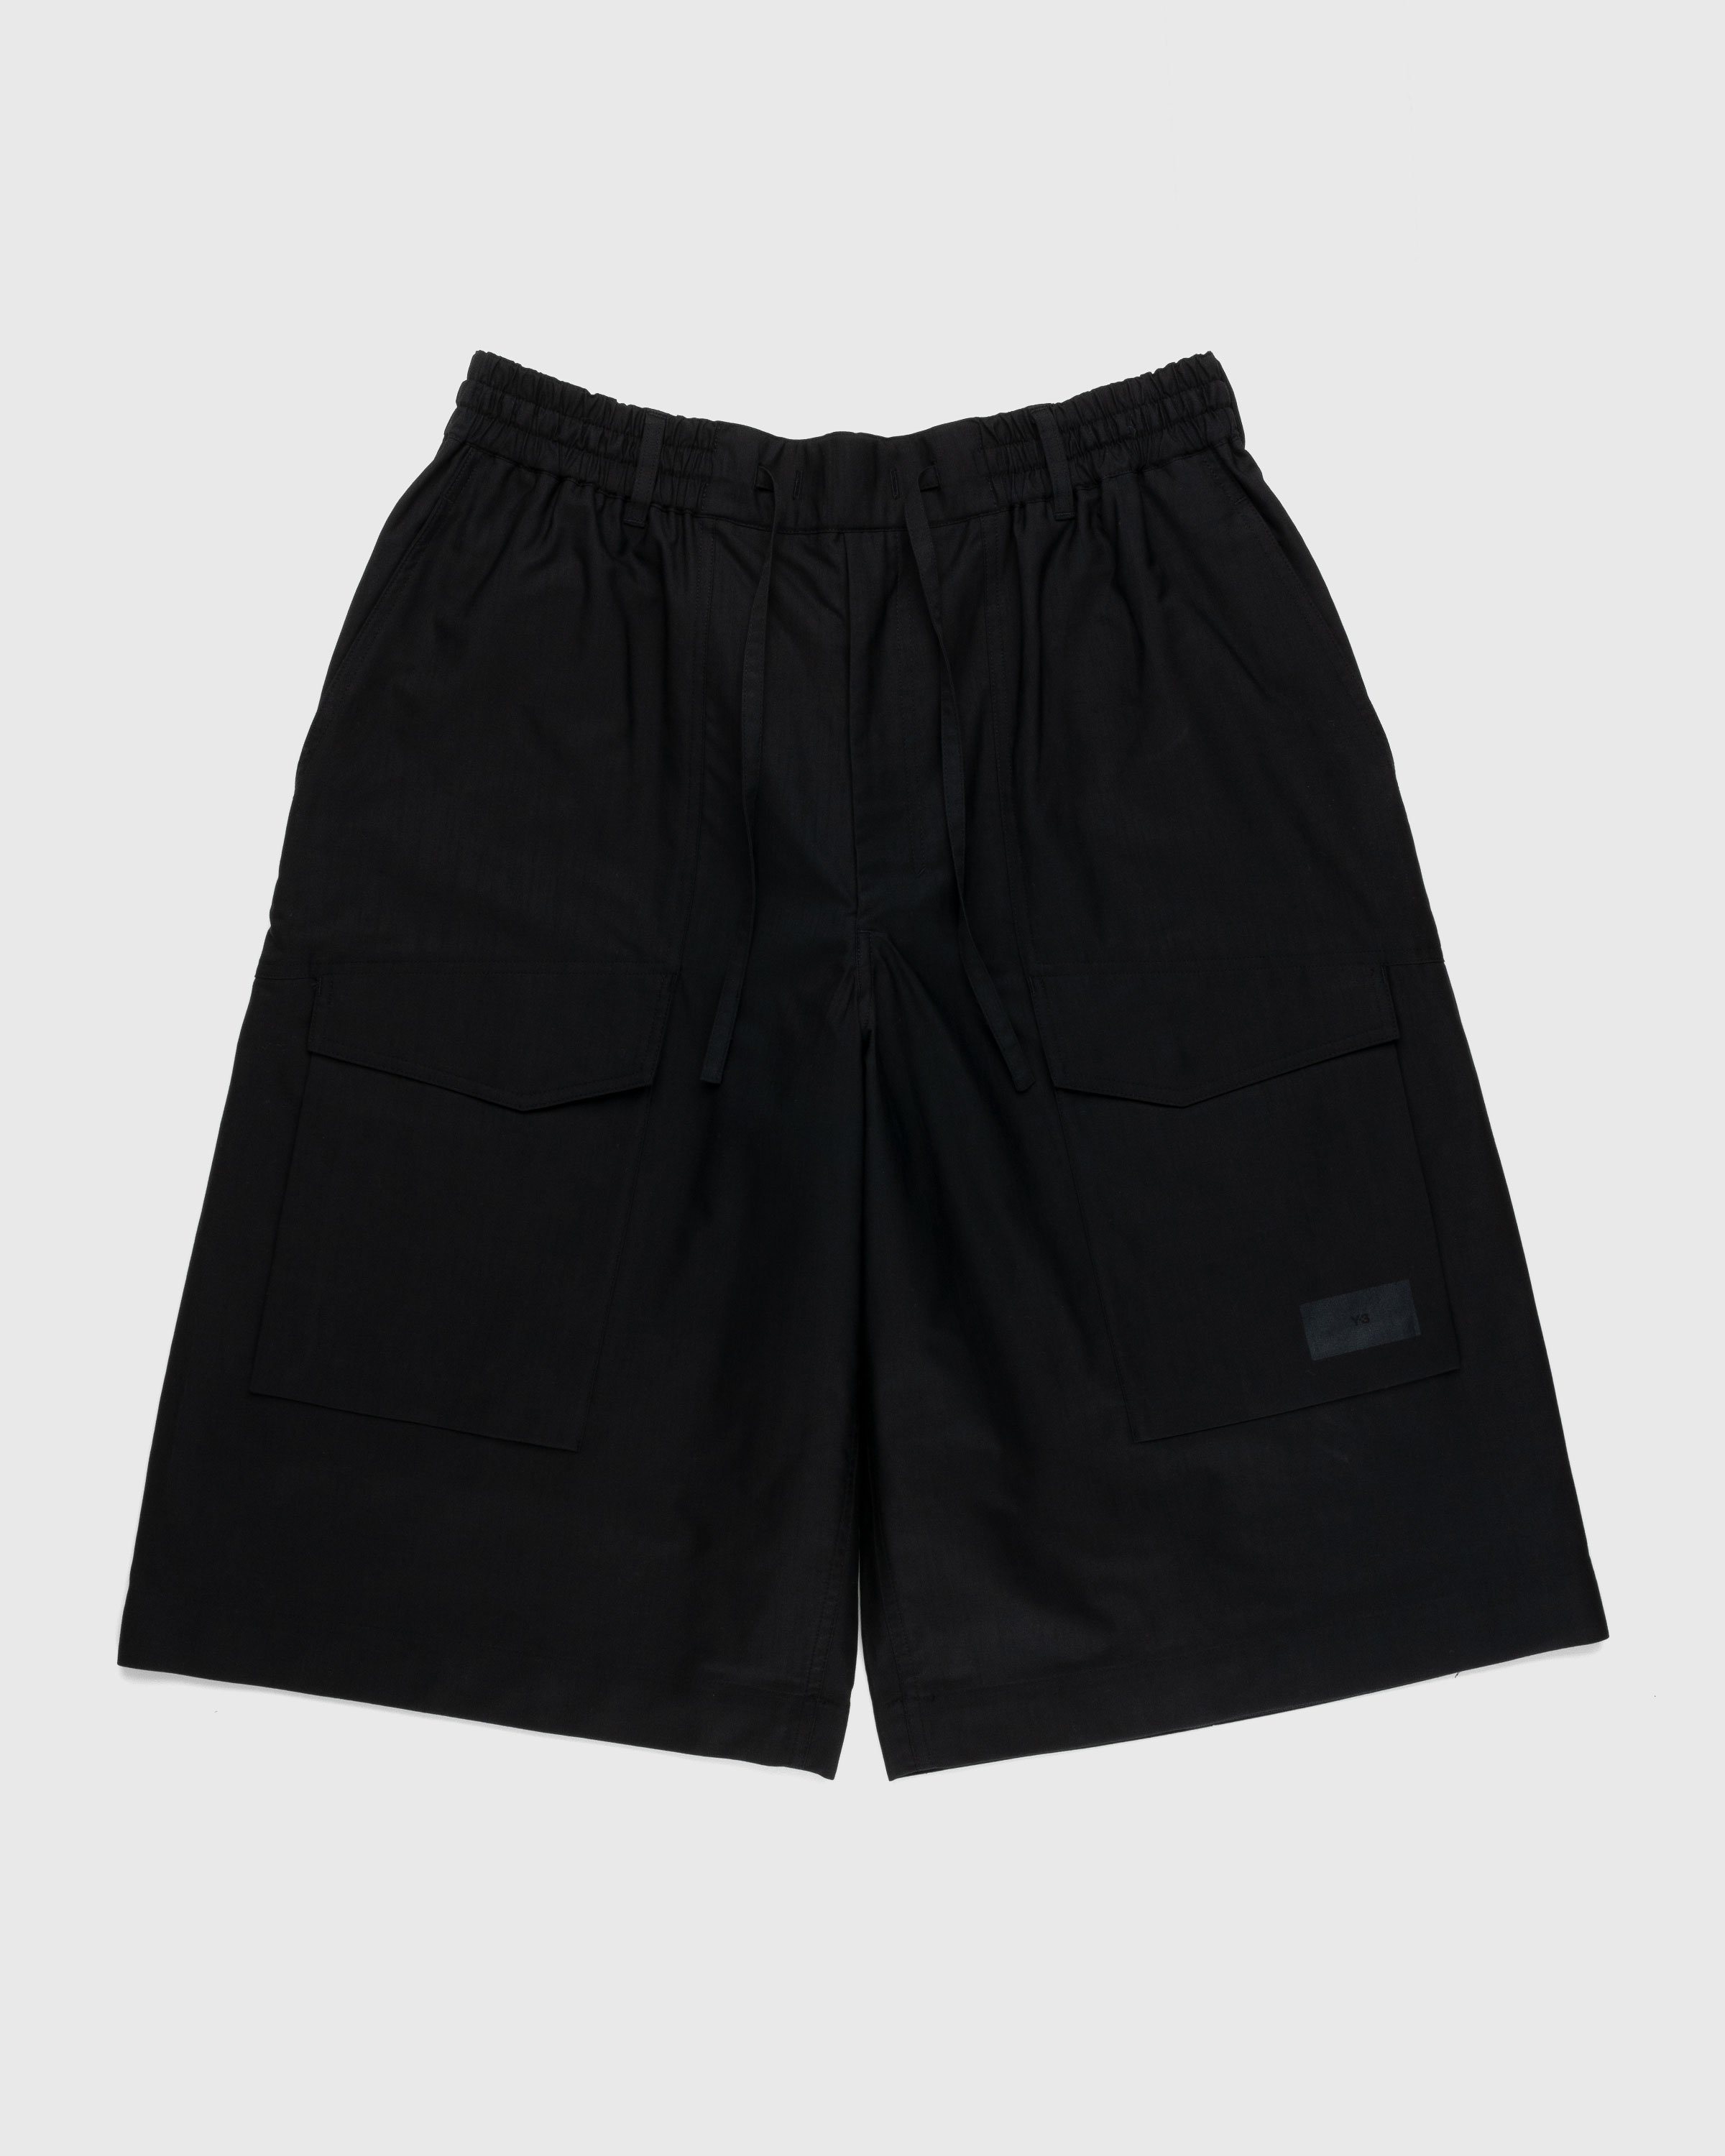 Y-3 - Workwear Shorts Black - Clothing - Black - Image 1